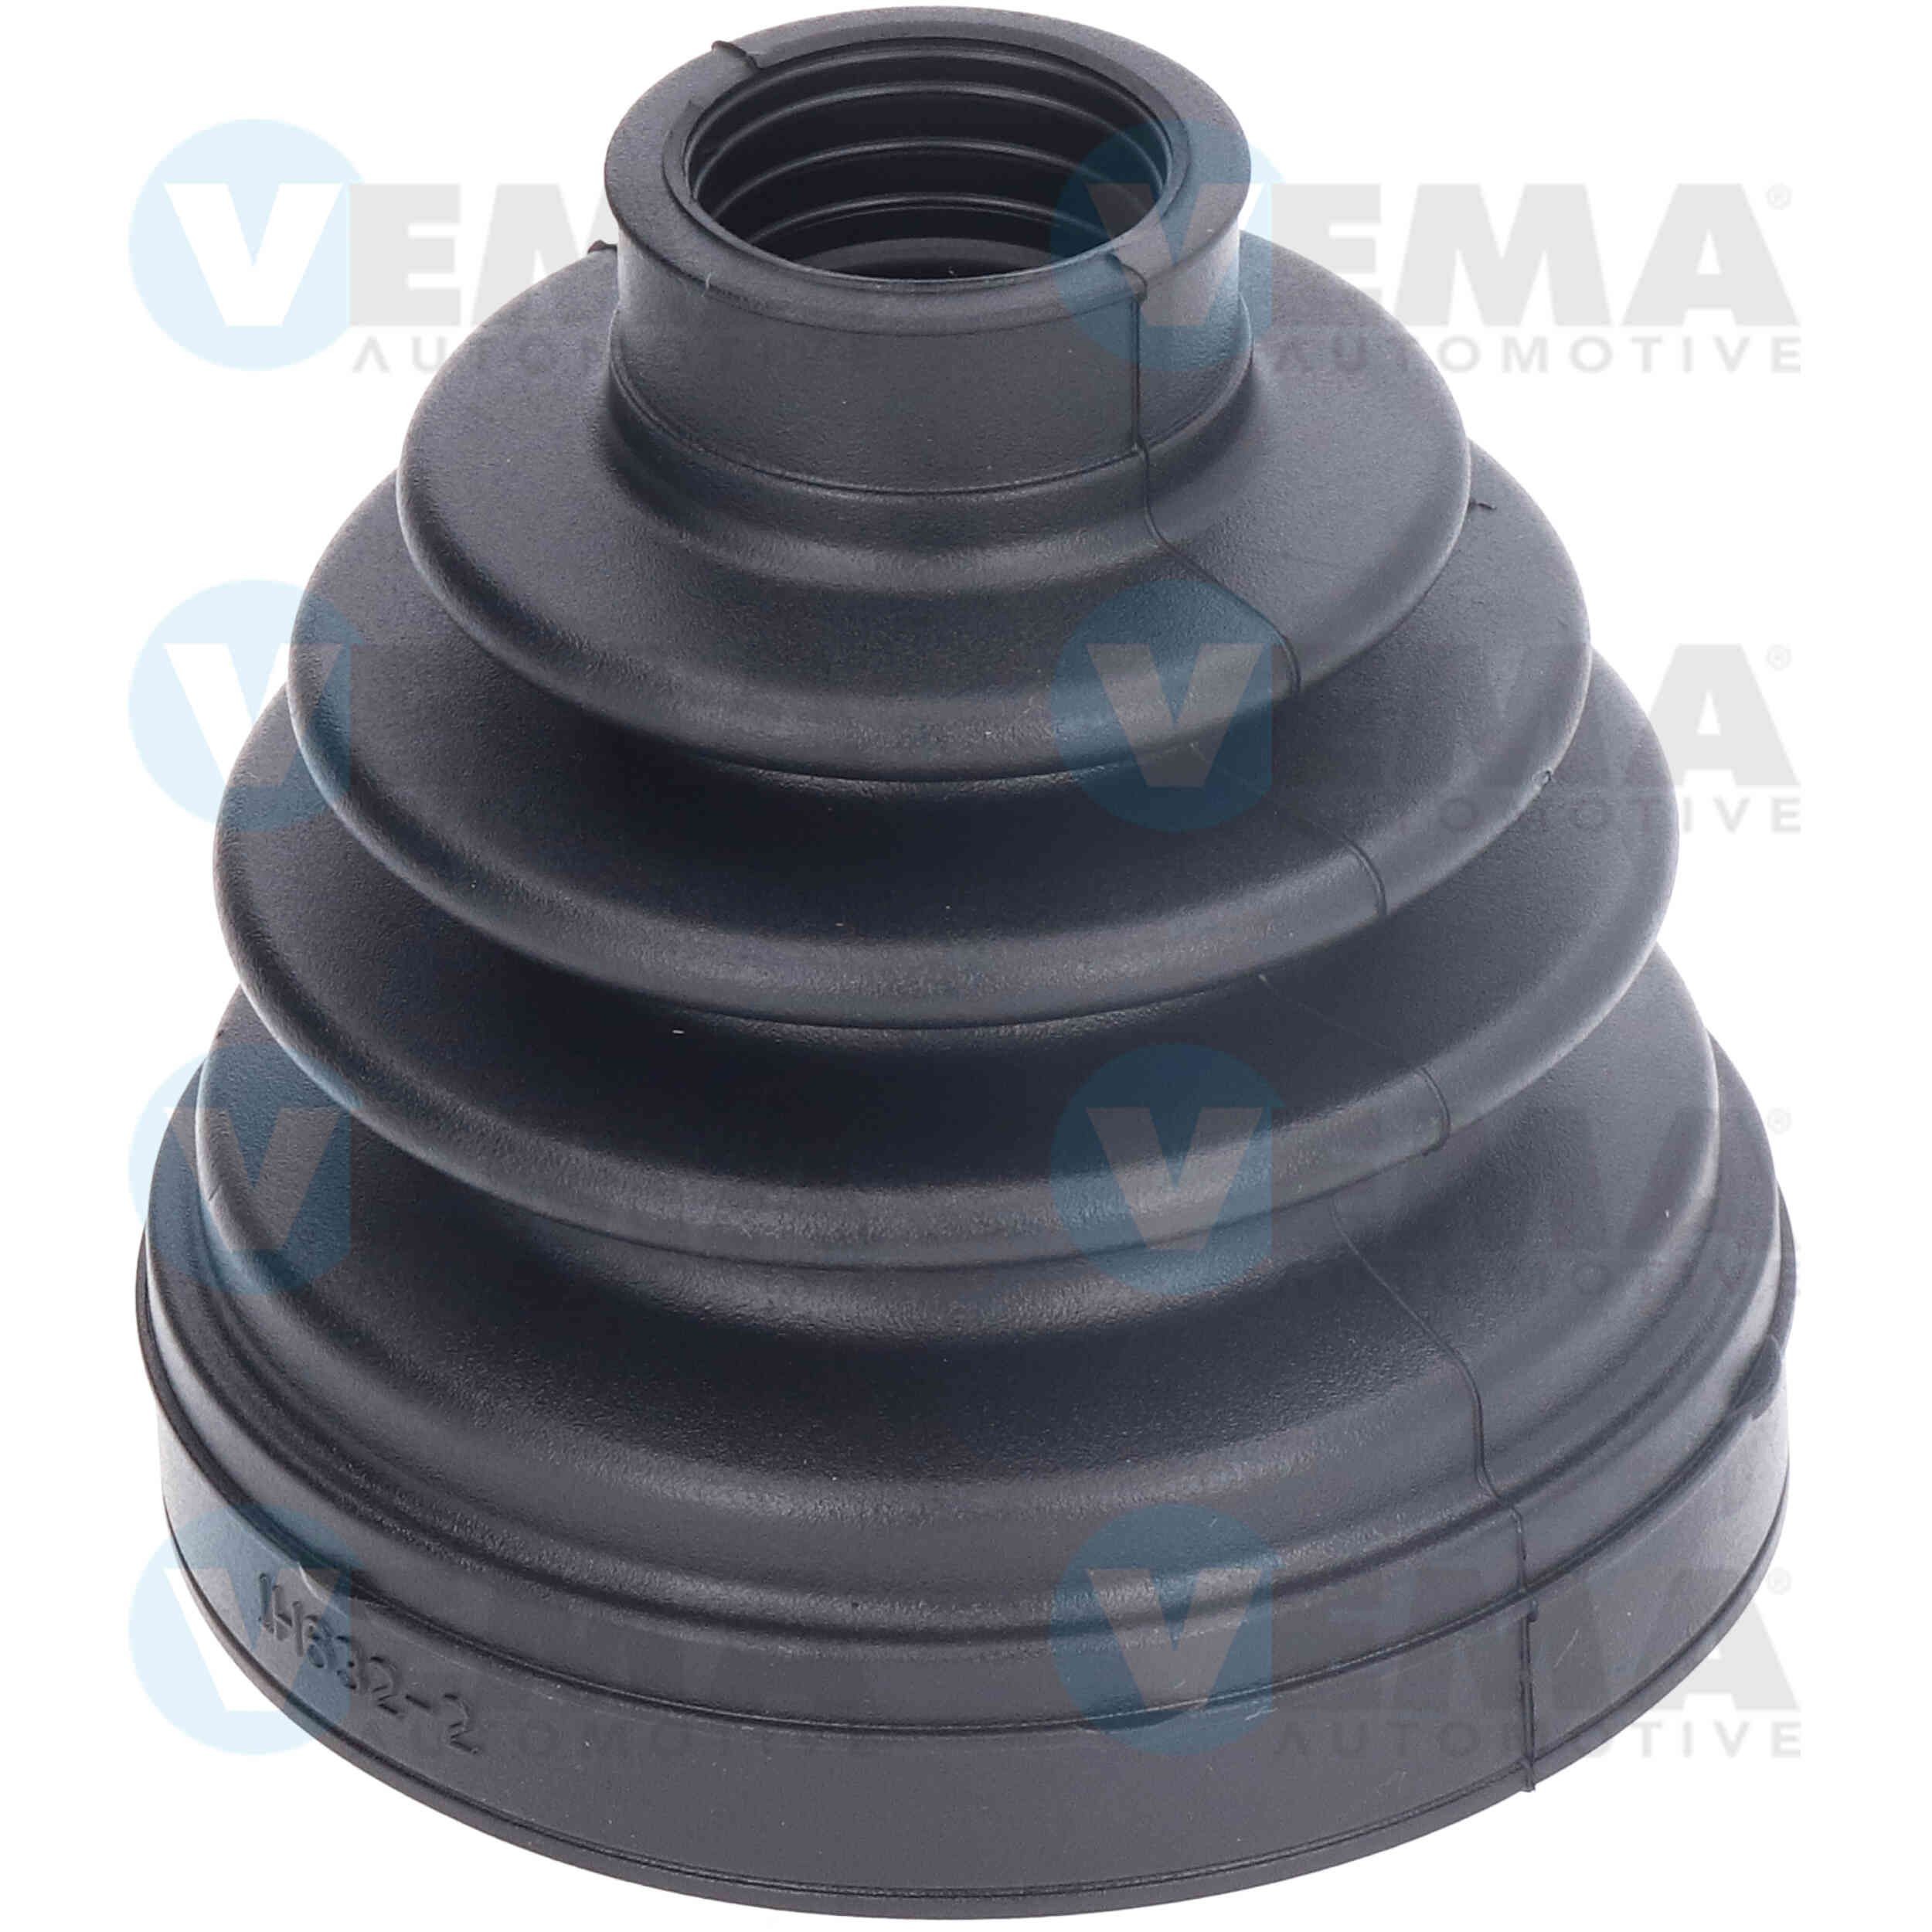 VEMA 515112 Wheel bearing kit A 126 330 00 51